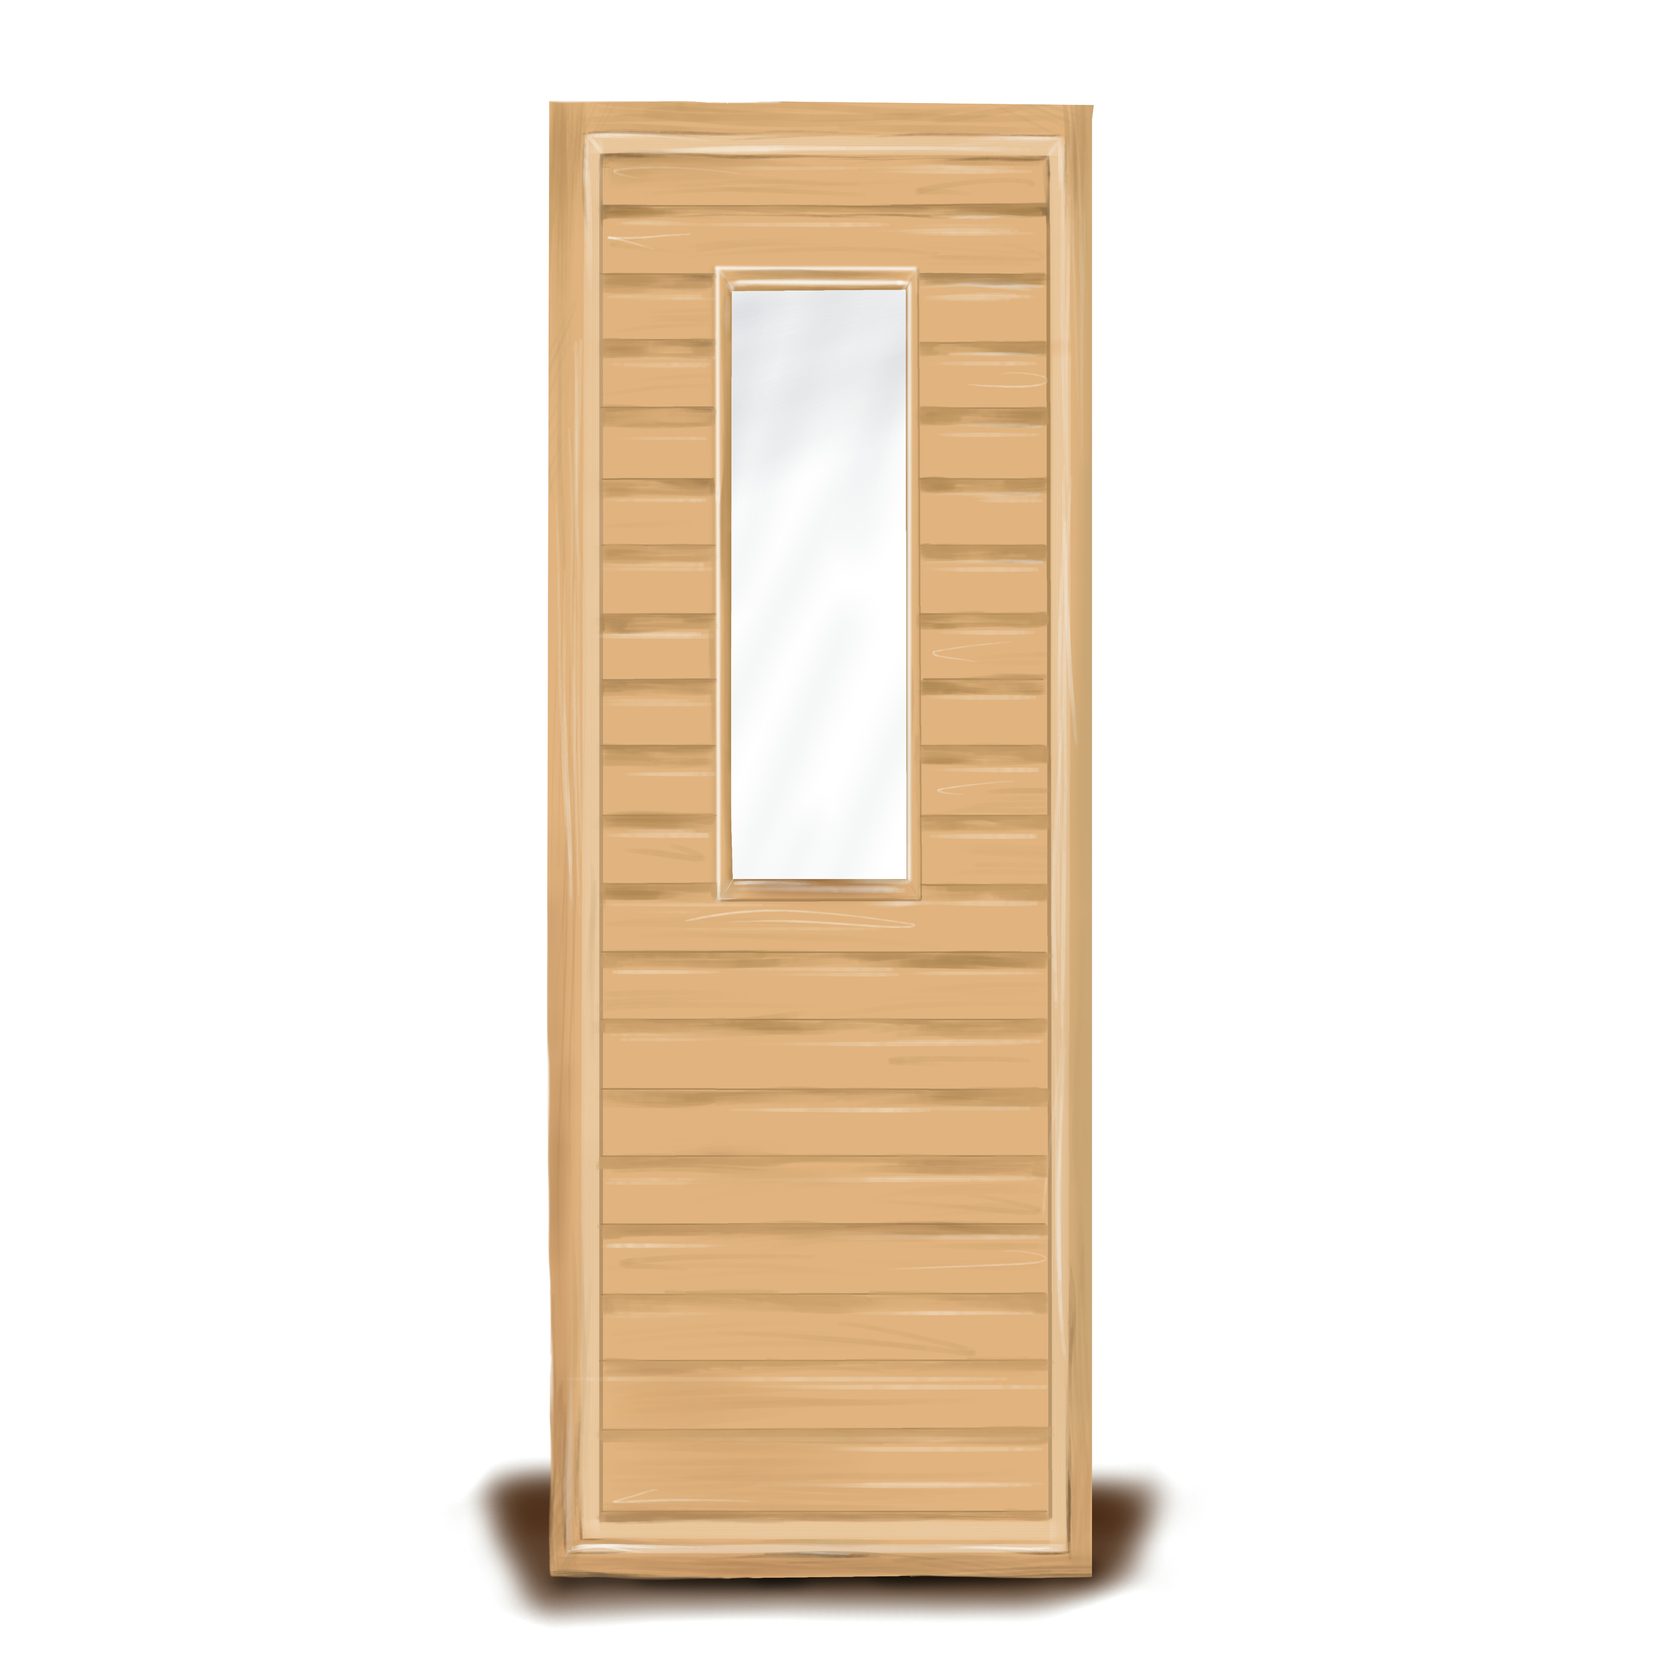 Дверь филенчатая деревянная размеры